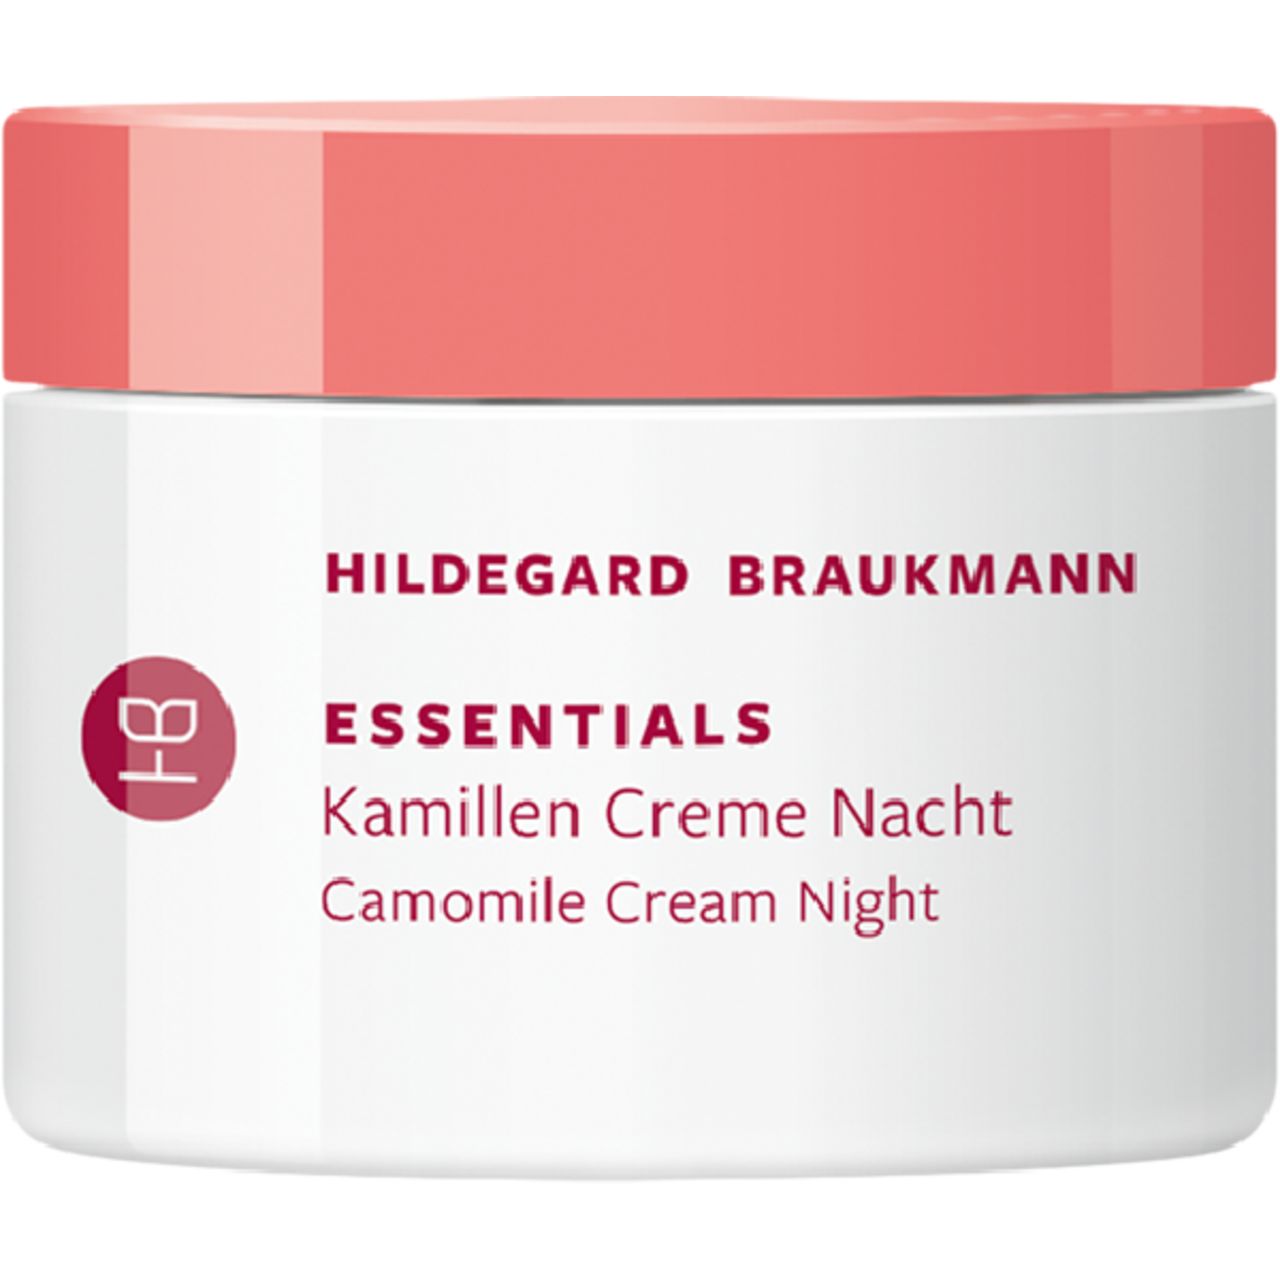 Hildegard Braukmann, Essentials Kamillen Creme Nacht